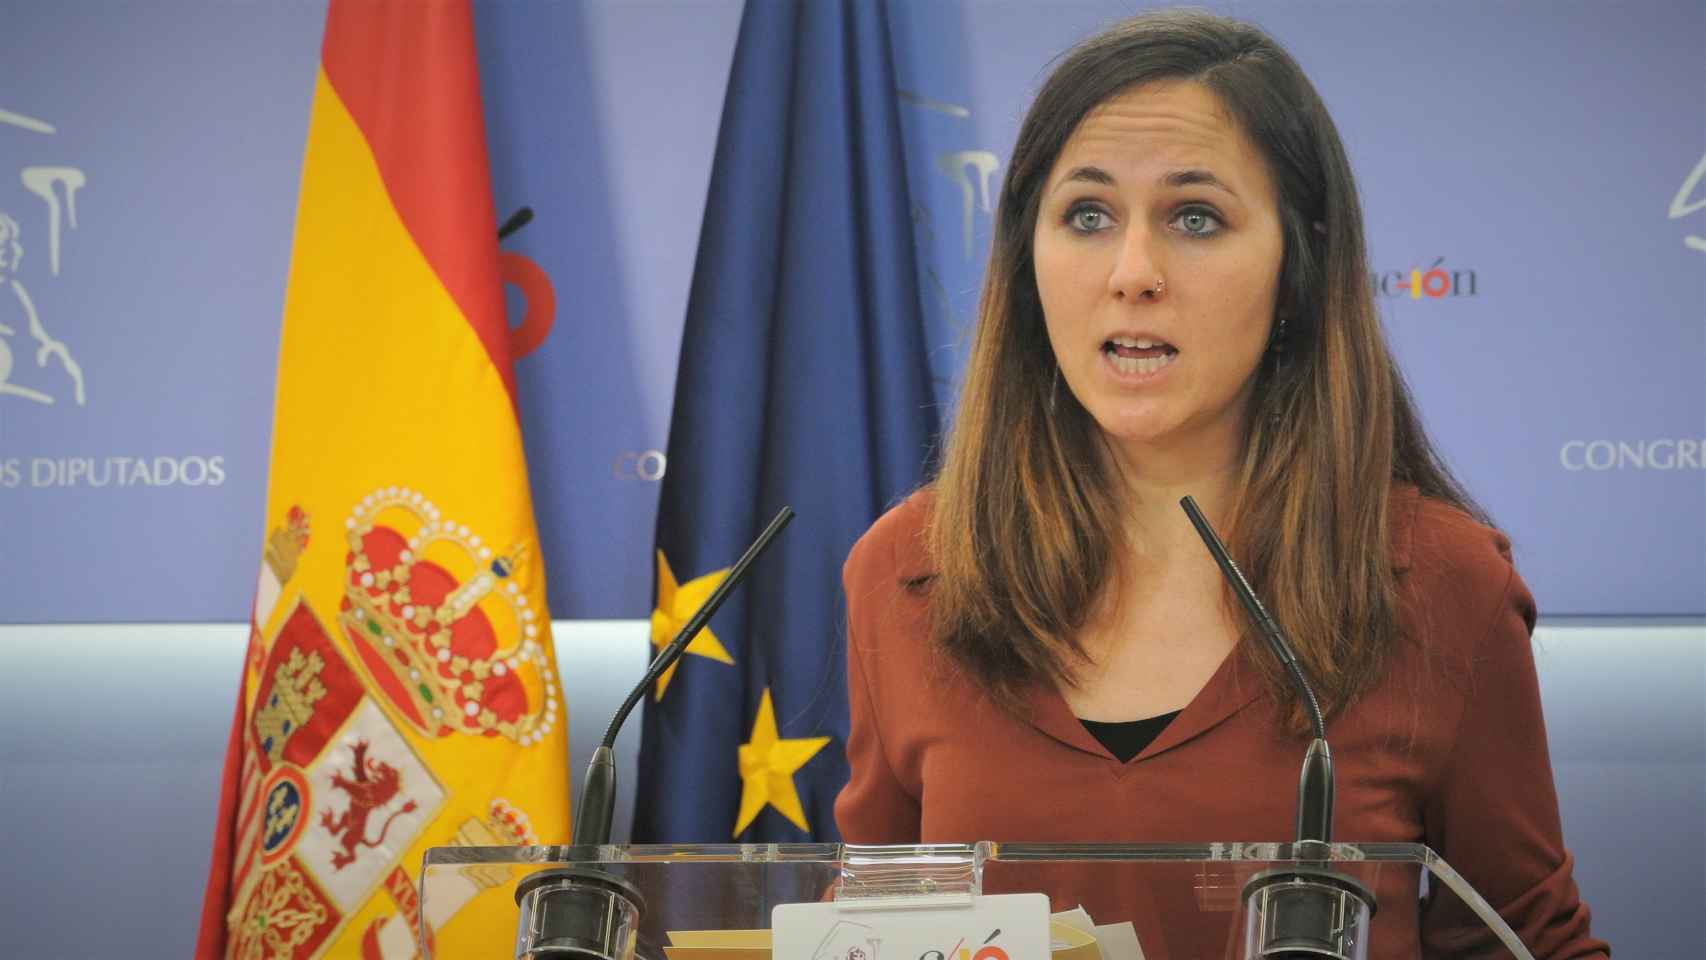 Ione Belarra, secretaria de Estado para la Agenda 2030 y coordinadora ejecutiva de Podemos.